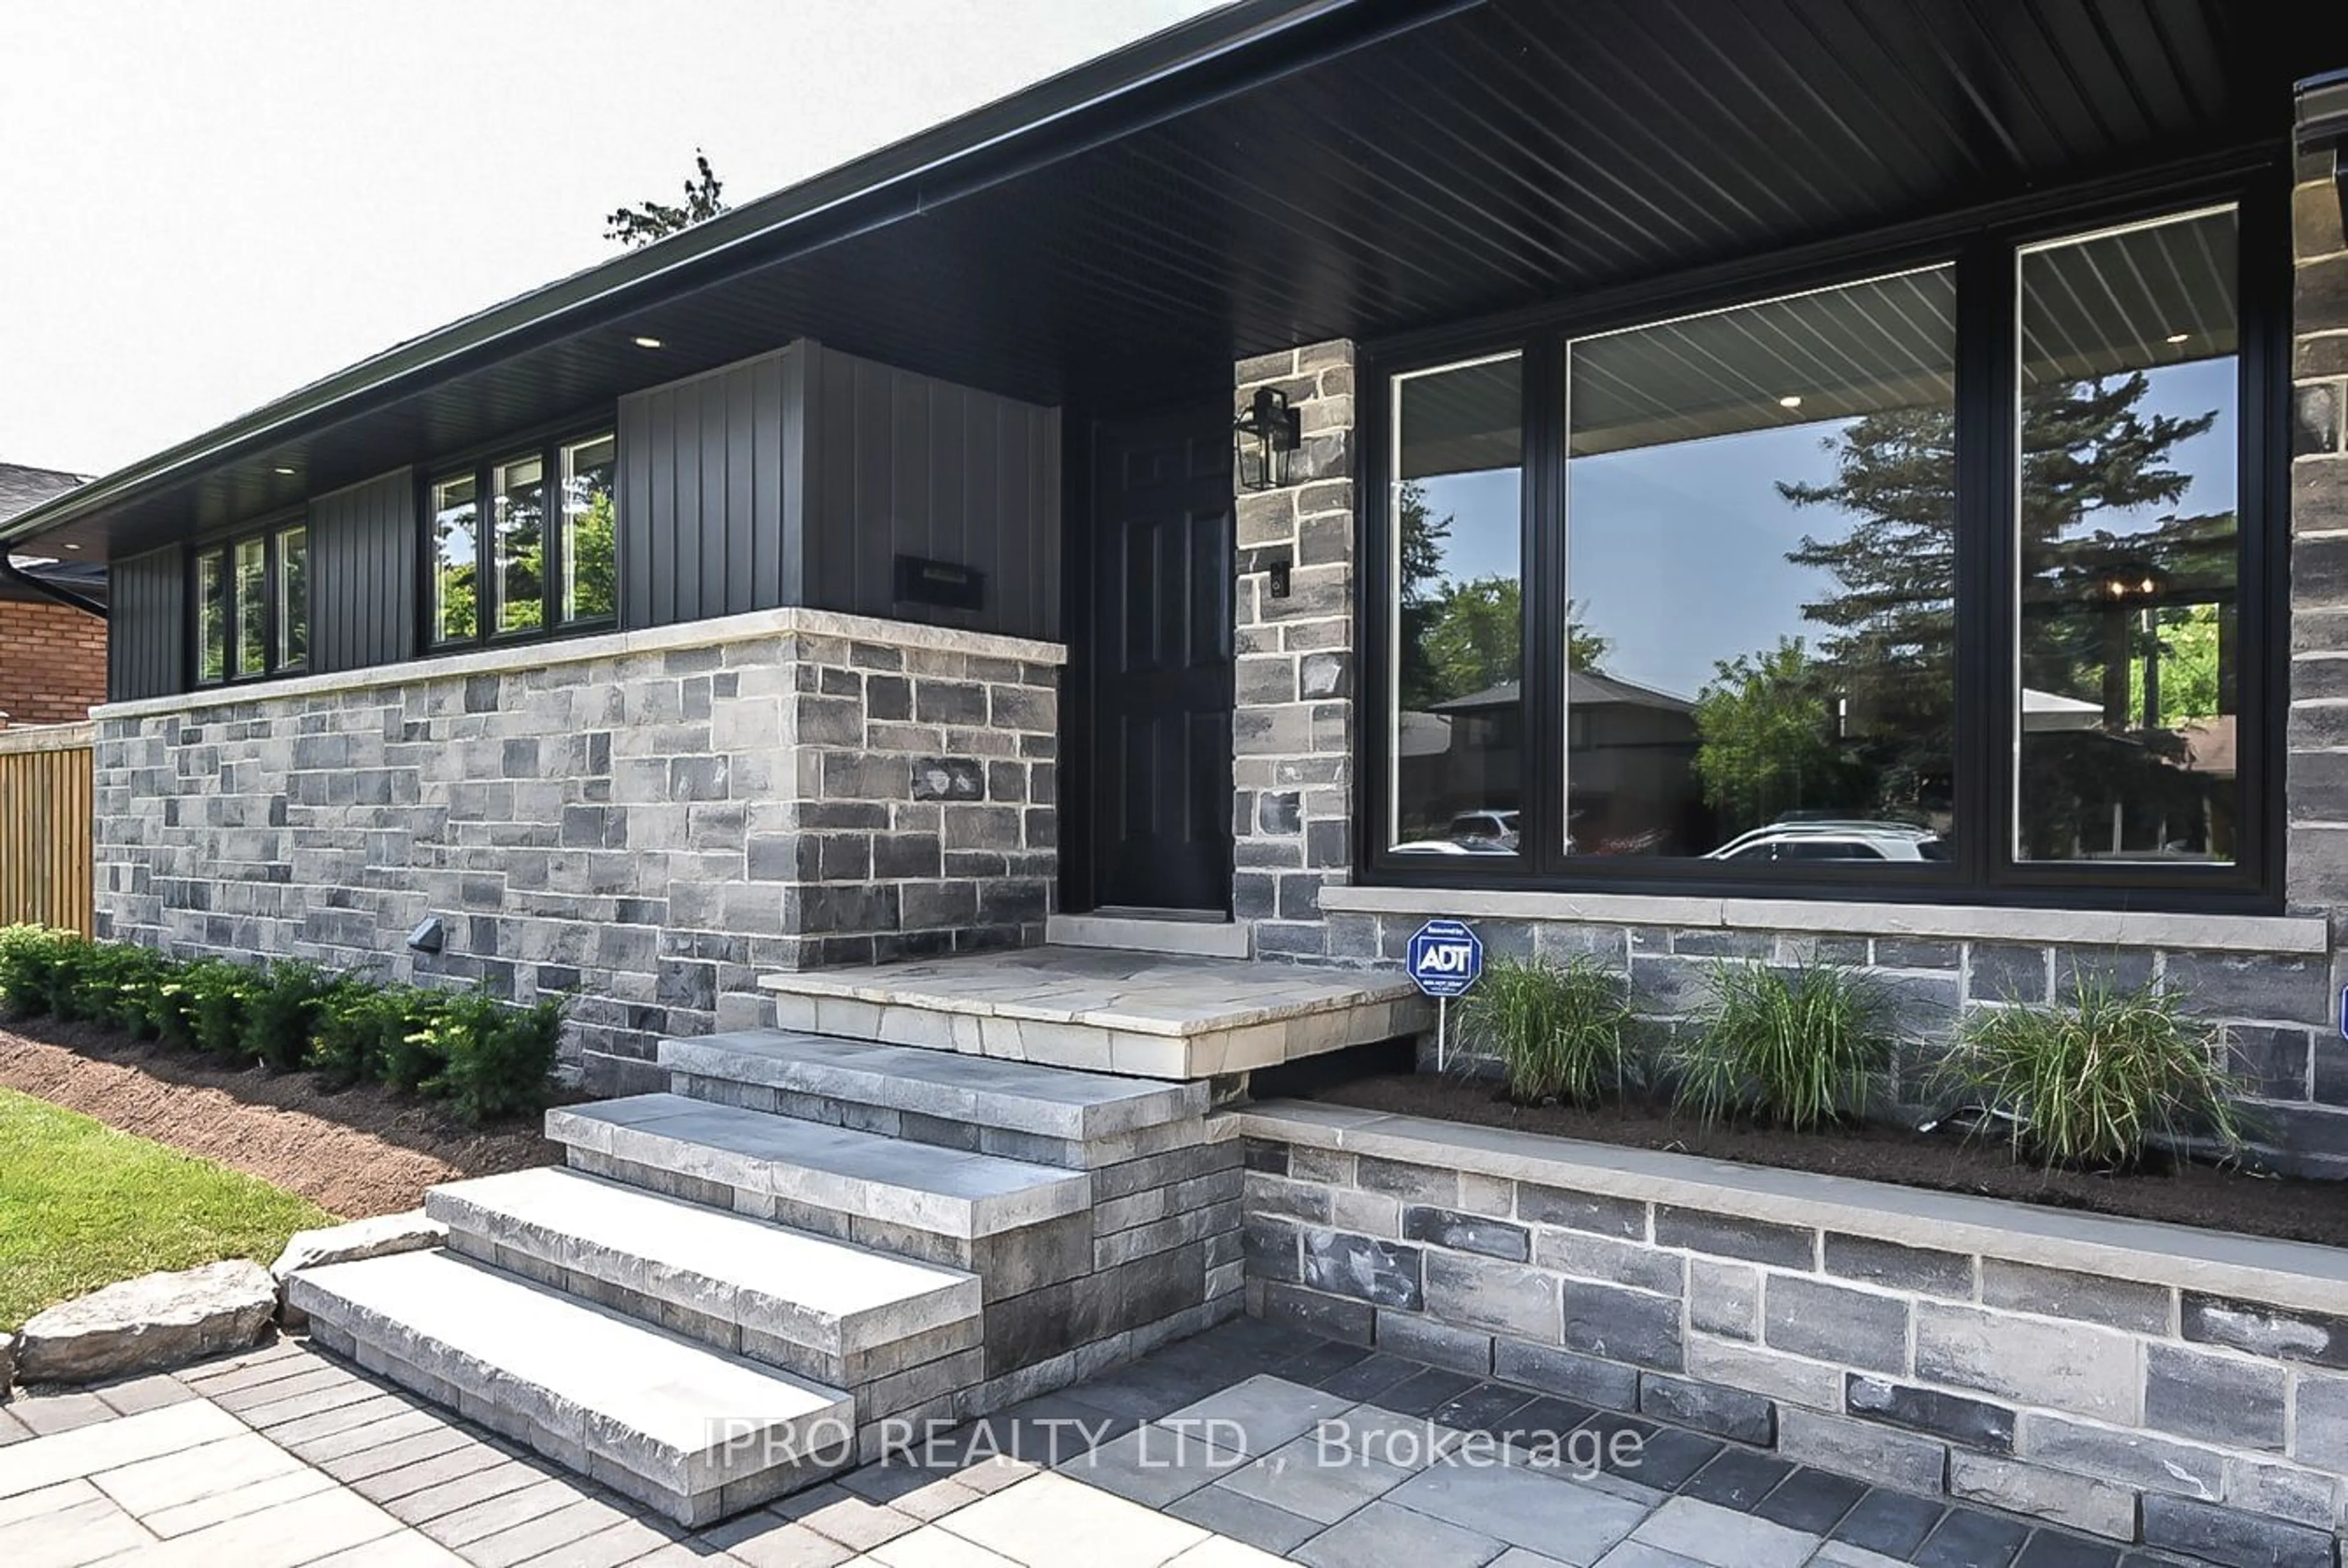 Home with brick exterior material for 118 Seneca Dr, Hamilton Ontario L9G 3B9